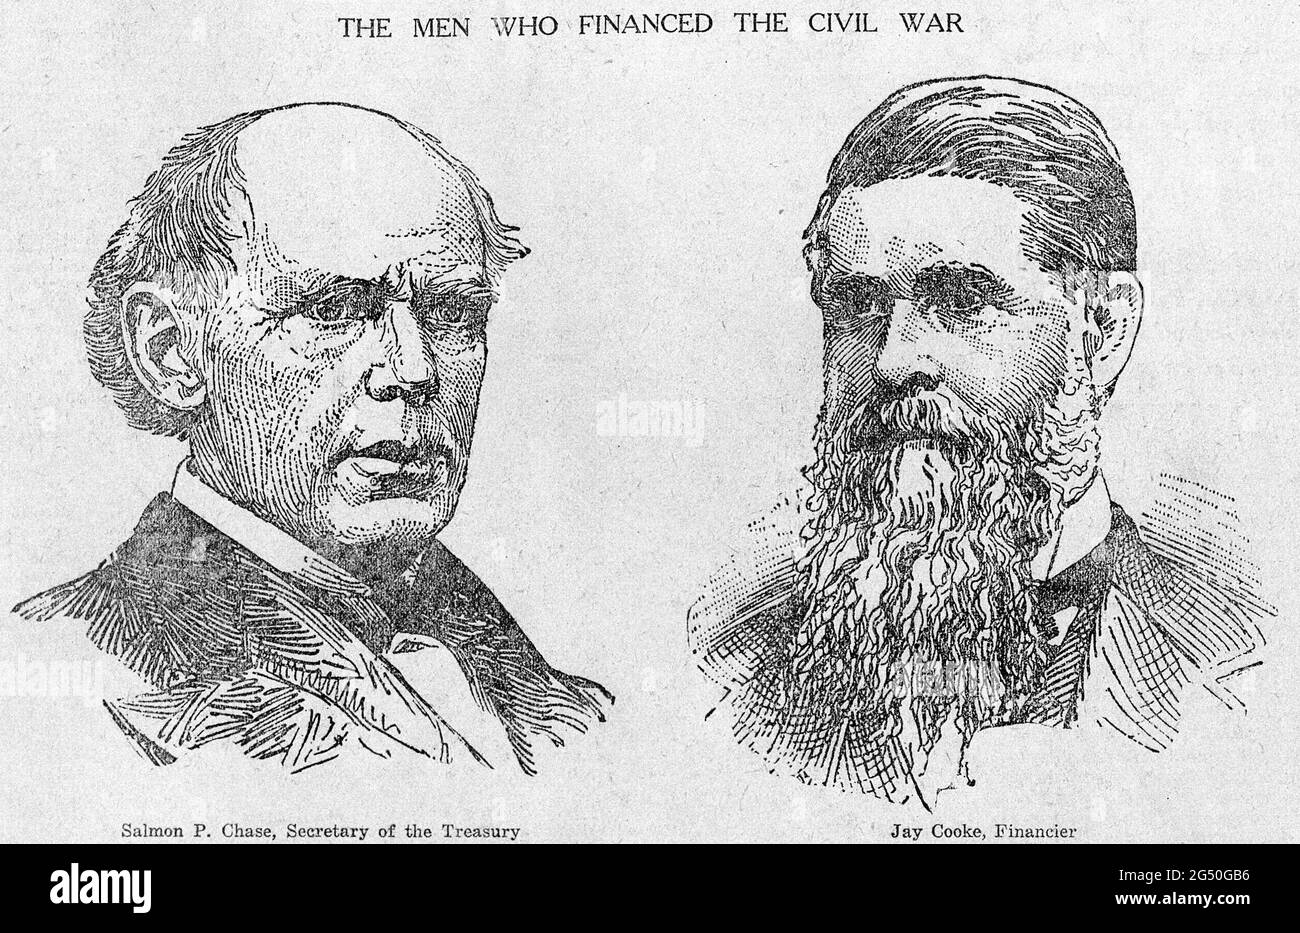 Incisione di due uomini che hanno finanziato la guerra civile americana. STATI UNITI. Salmone del XIX secolo P. Chase, Segretario del Tesoro (sinistra) e Jay Cooke, Financie Foto Stock